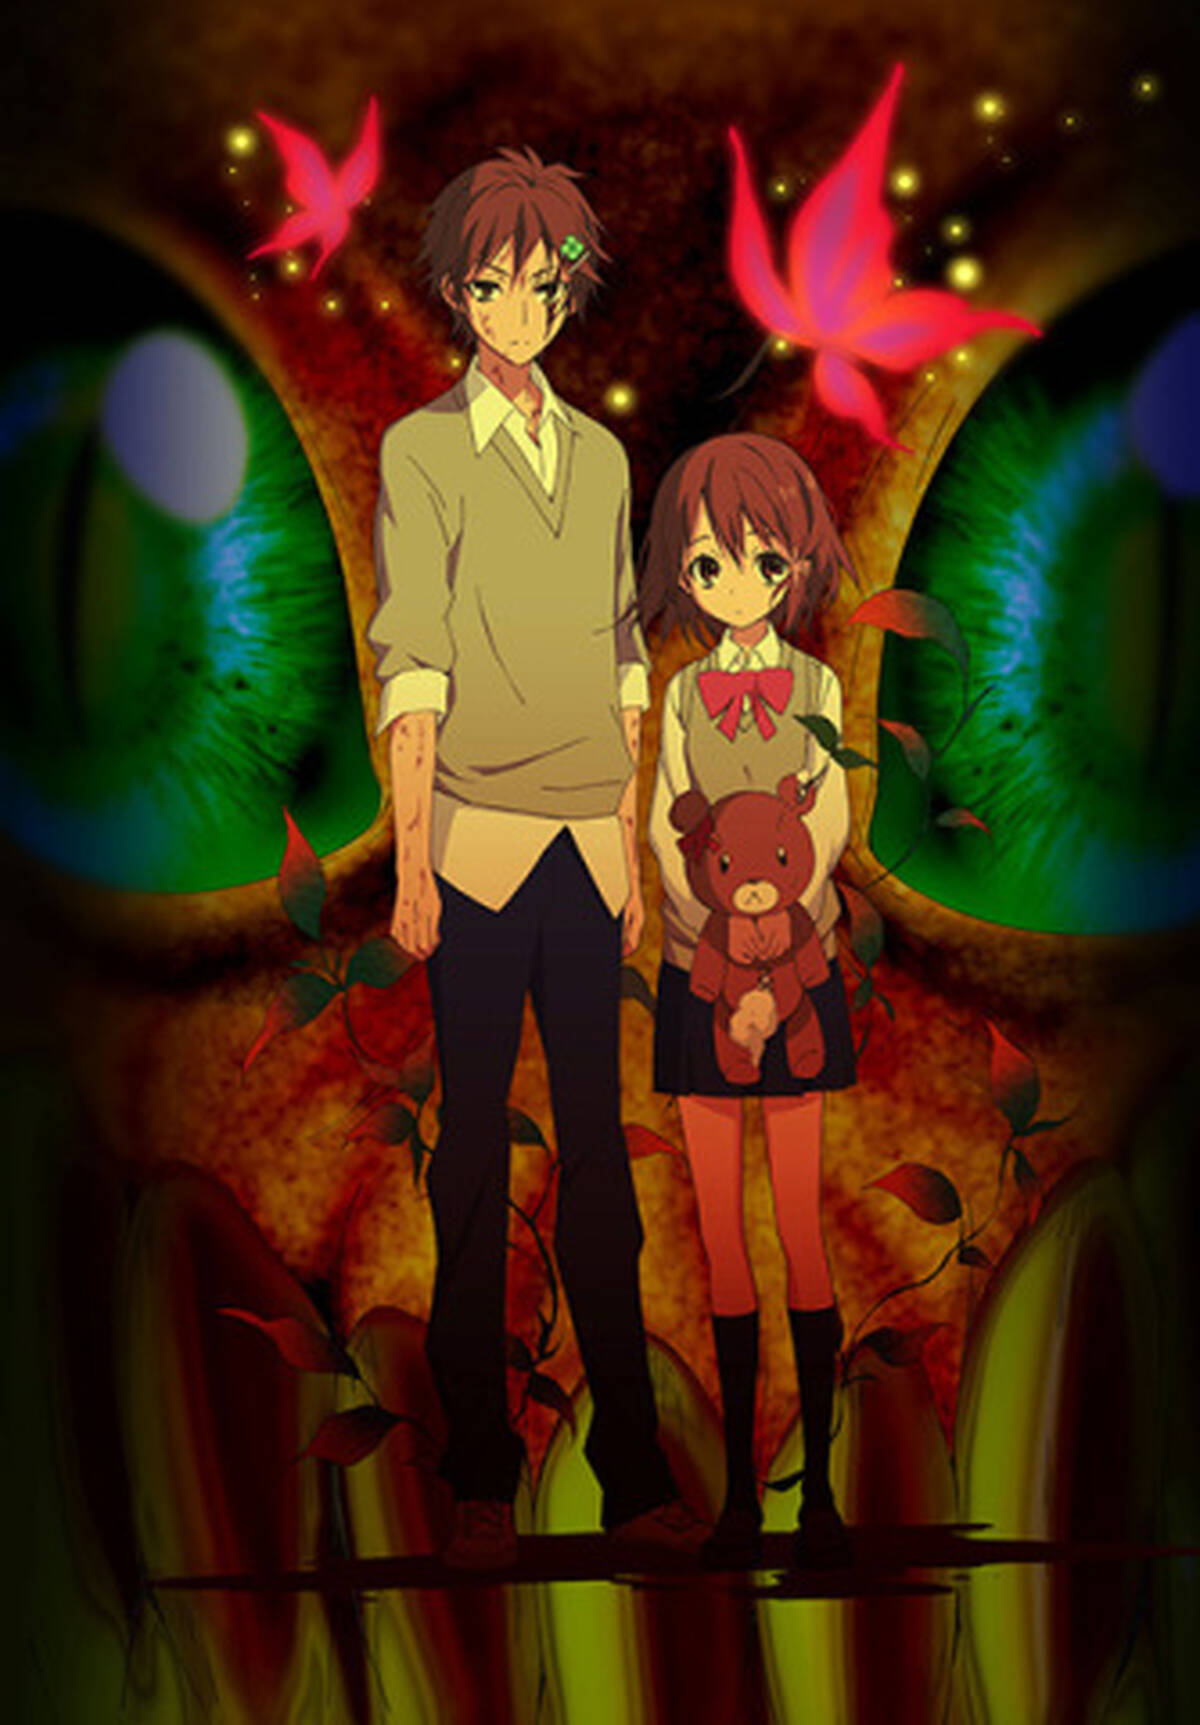 衝撃的な兄妹愛を描くtvアニメ Pupa 無修正版で第8話までを先行上映 関西地区での放送も決定 アキバ総研